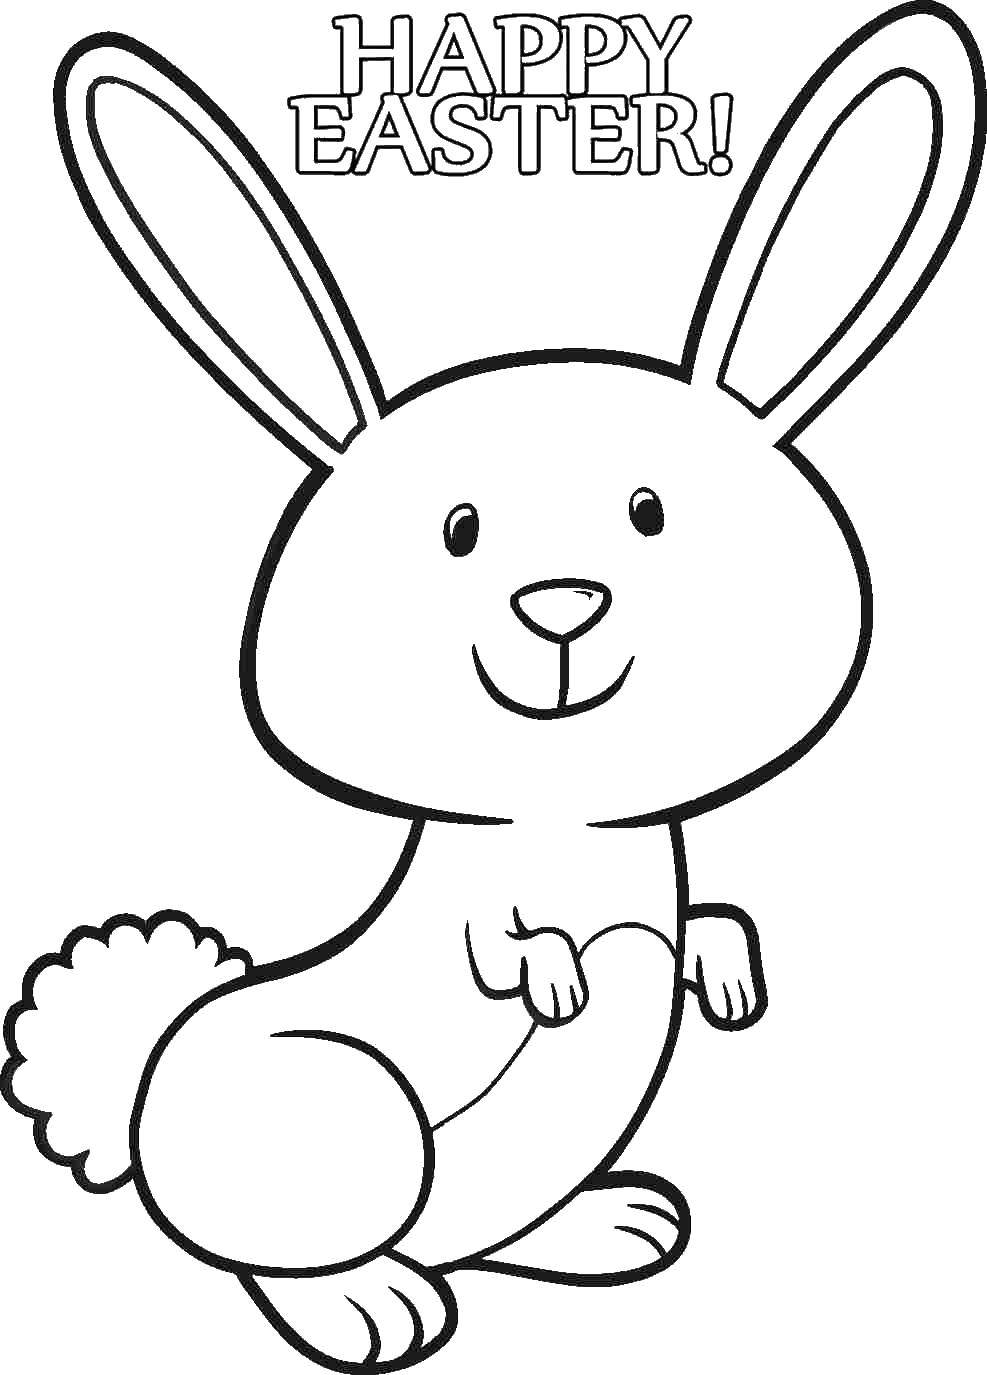 Название: Раскраска Поздравление на пасху. Категория: раскраски пасха. Теги: кролик, заяц, пасха.